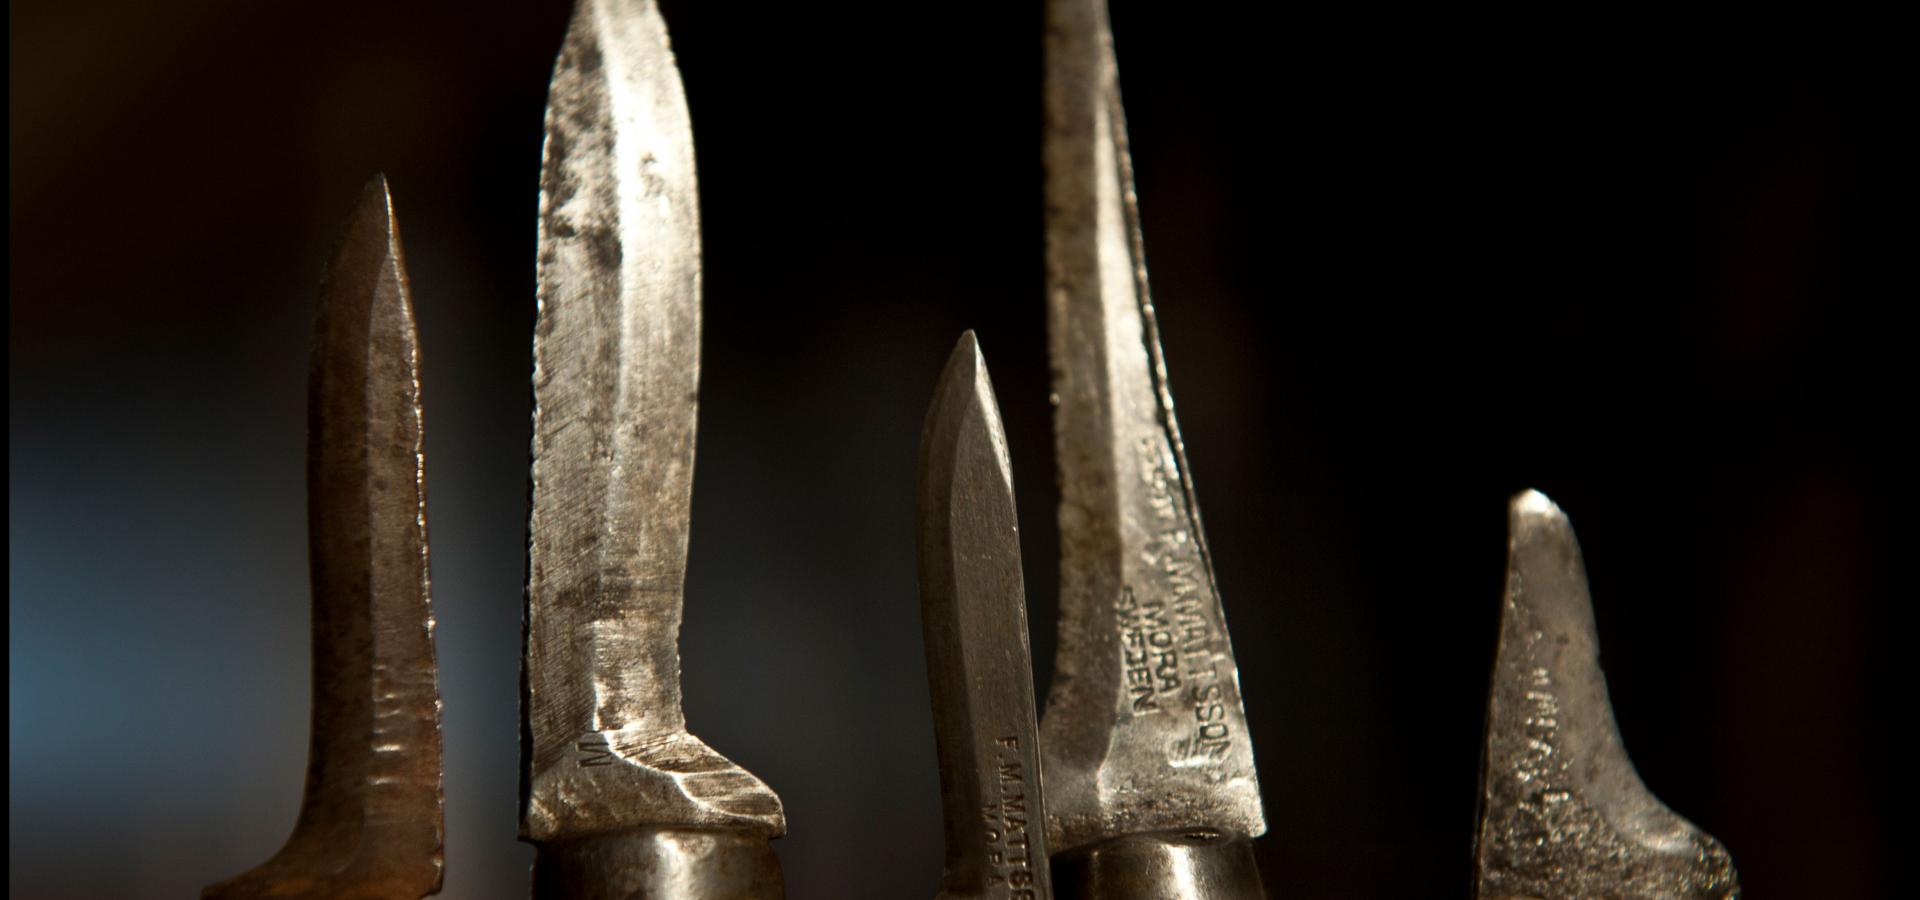 Gamla knivar från Morakniv, som firar 130 år 2021.